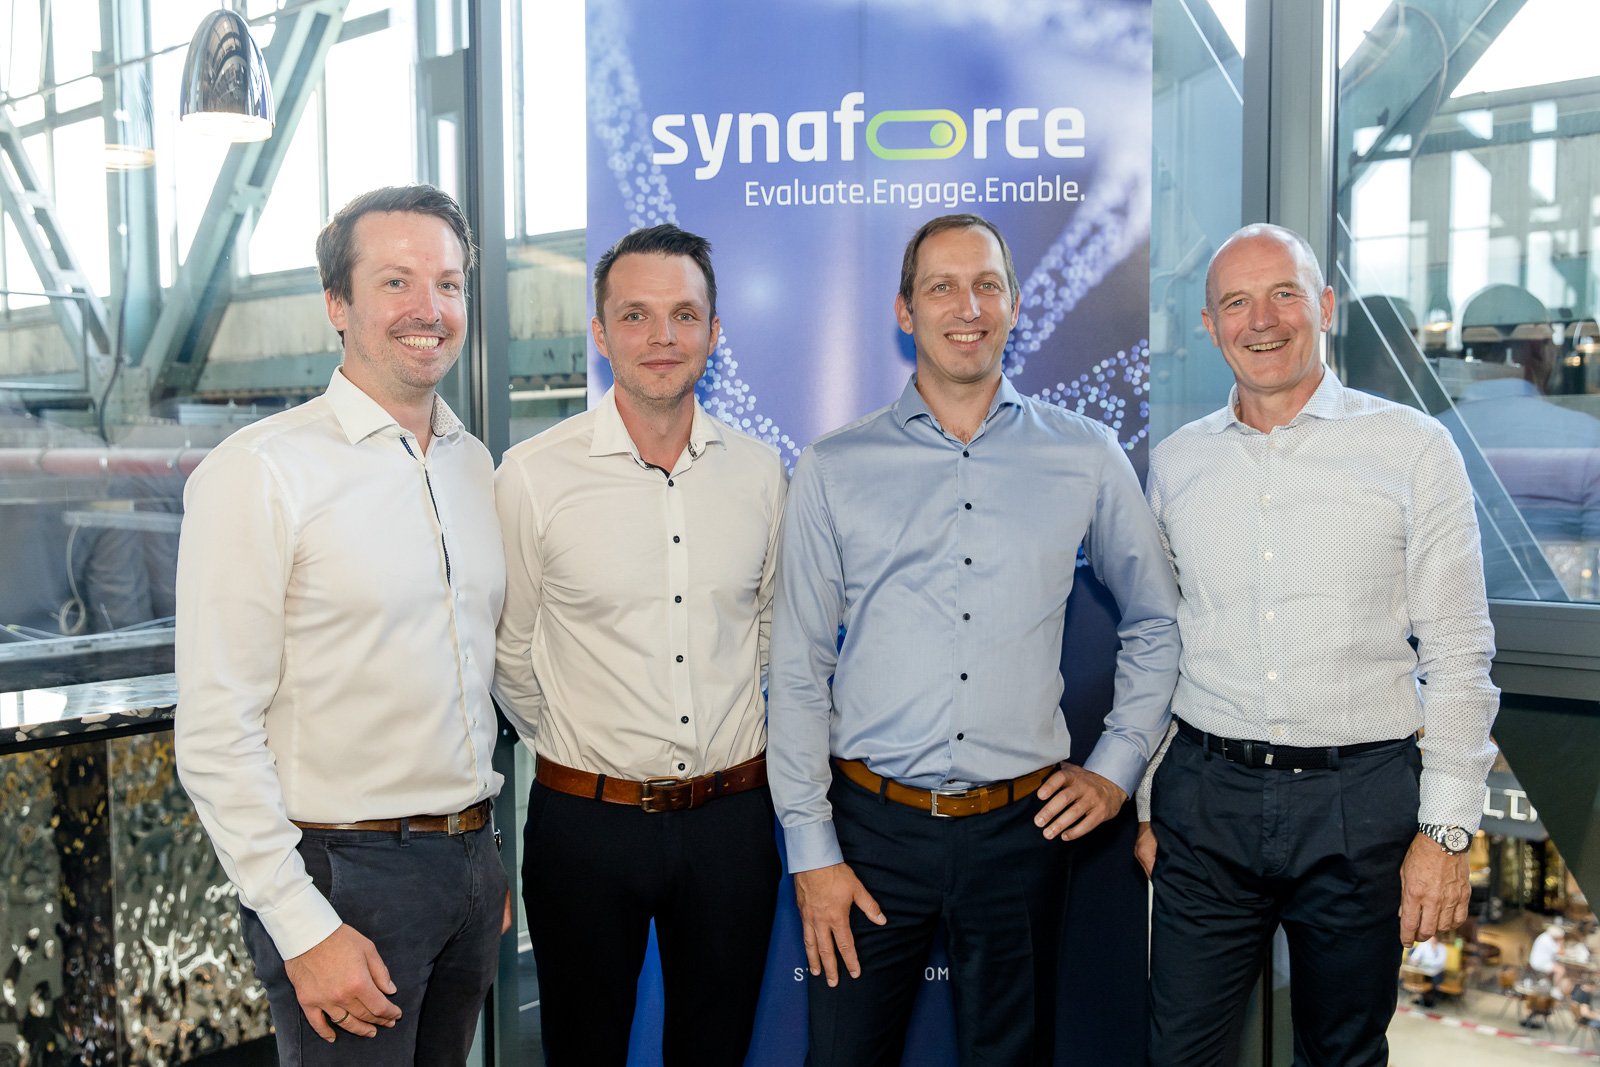 Die Geschäftsführung der synaforce v.l.n.r.: Hannes Beierlein (CMO), Tobias Lehner (CTO), Andreas Braidt (COO/Co-CEO) und Peter Hartl (CEO)